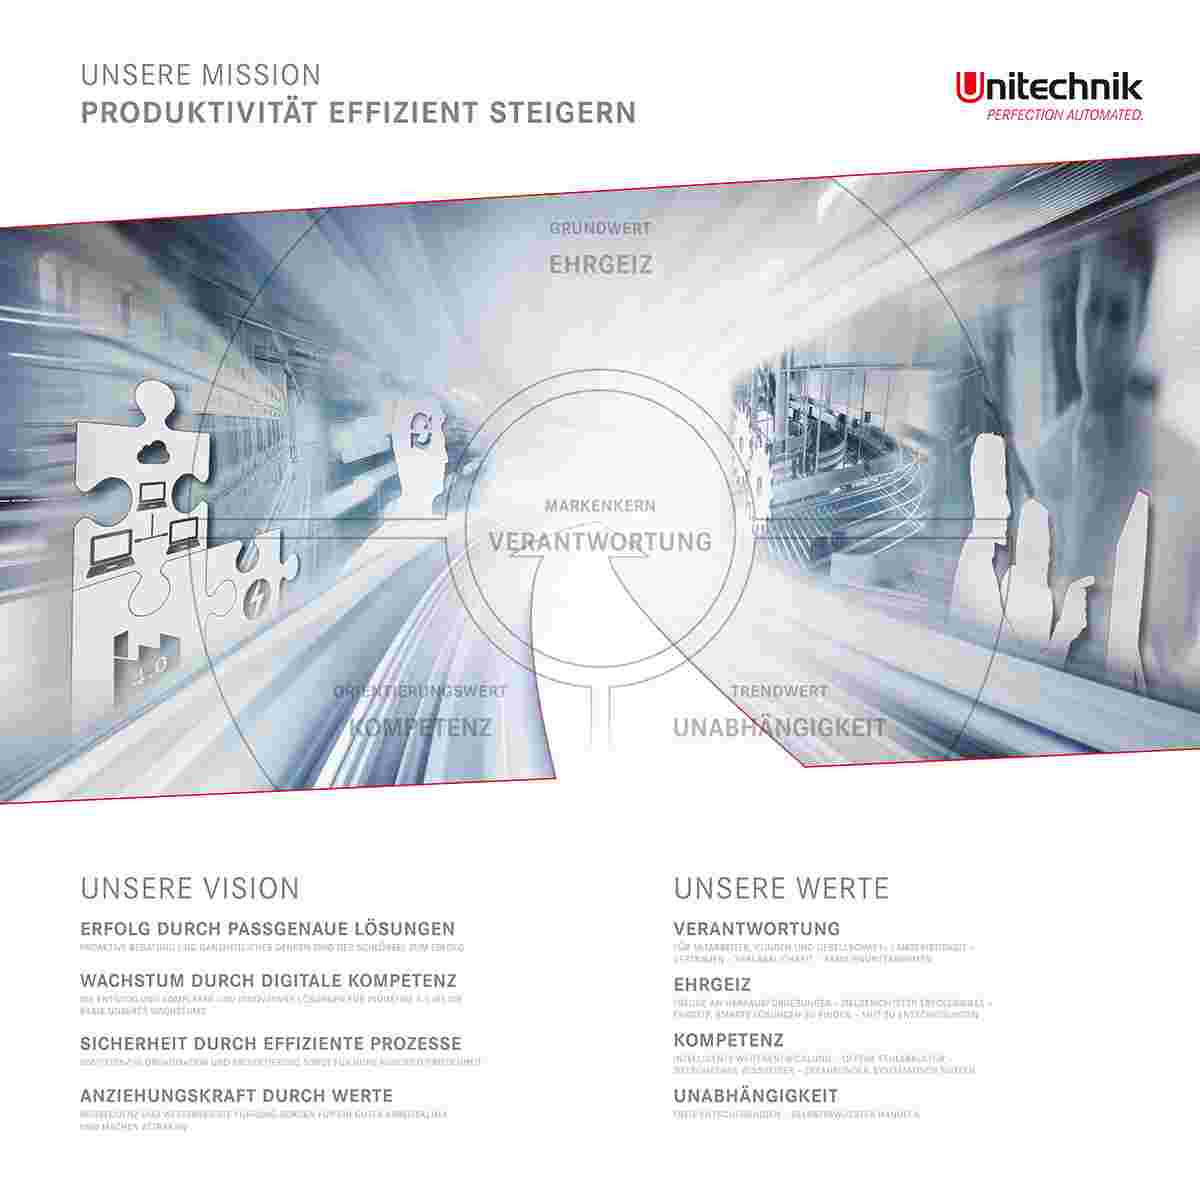 Mission, Vision und Werte der Unitechnik Group